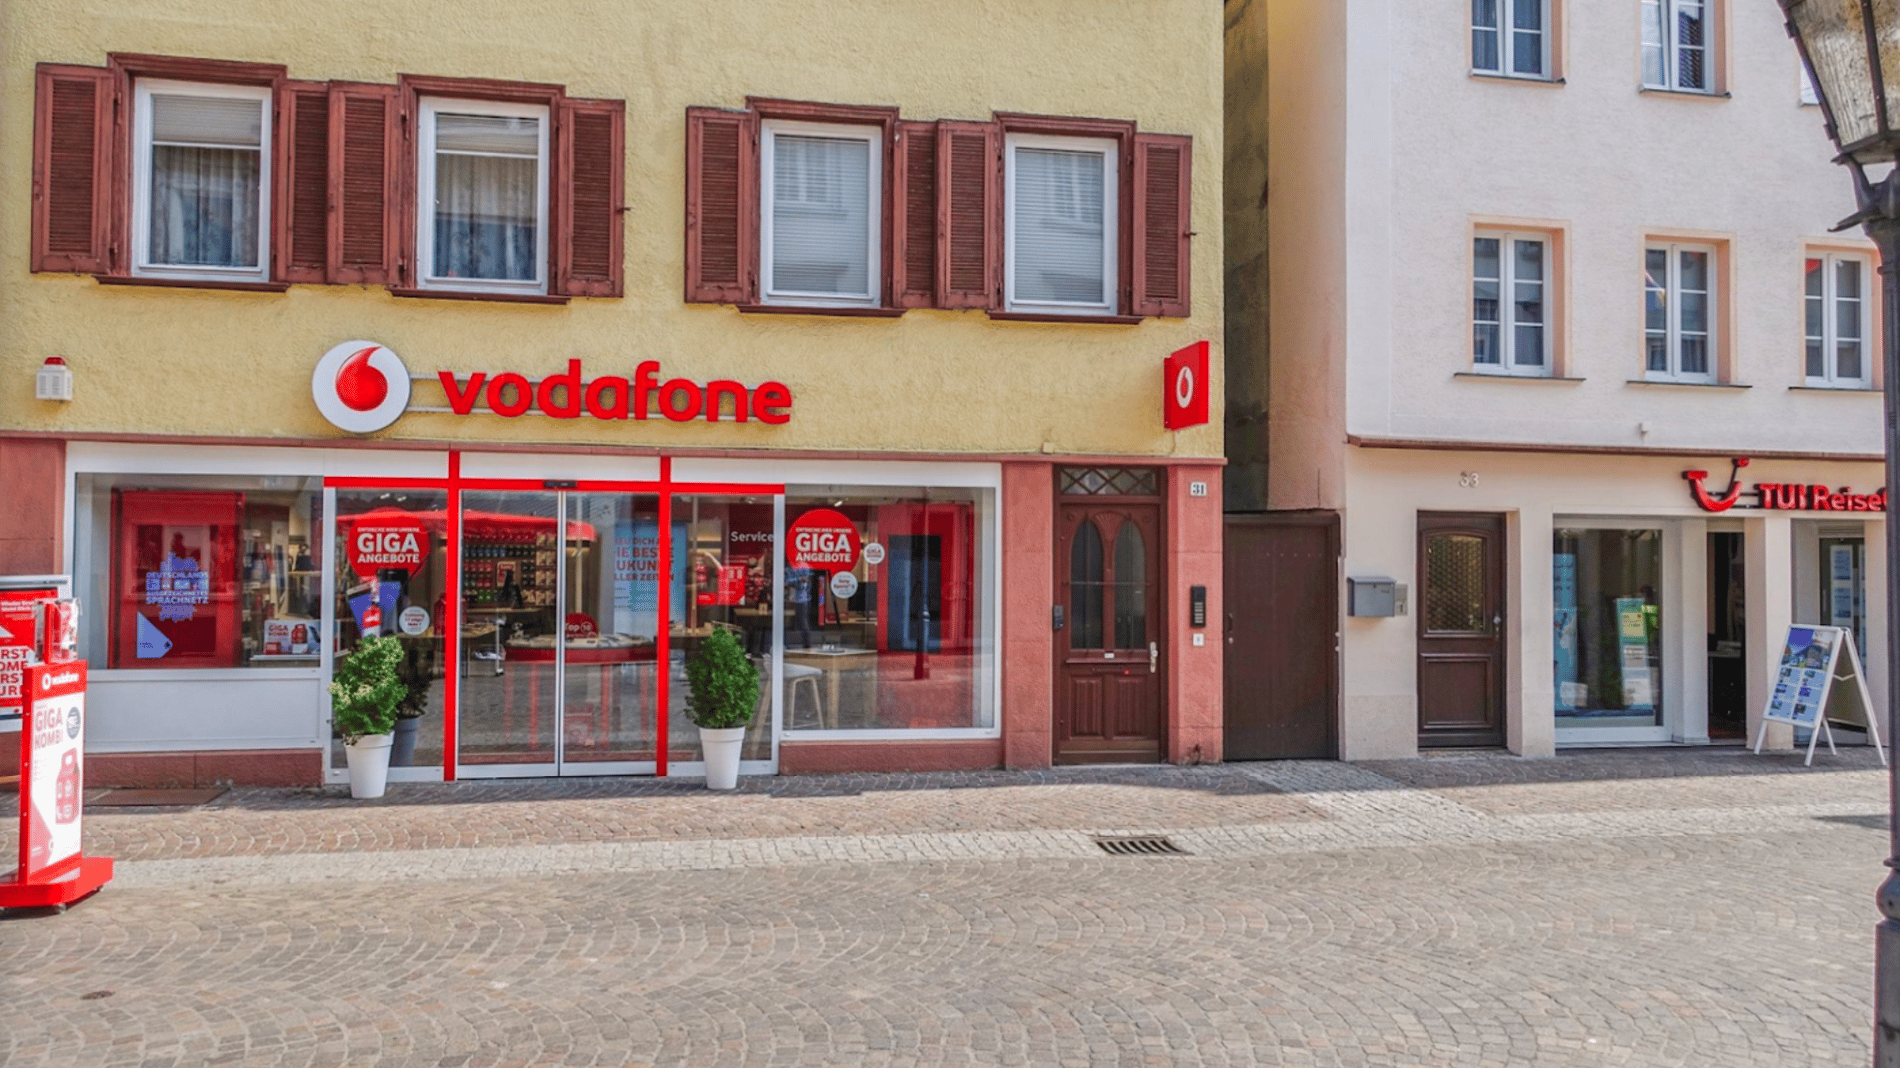 Vodafone-Shop in Geislingen, Hauptstr. 31